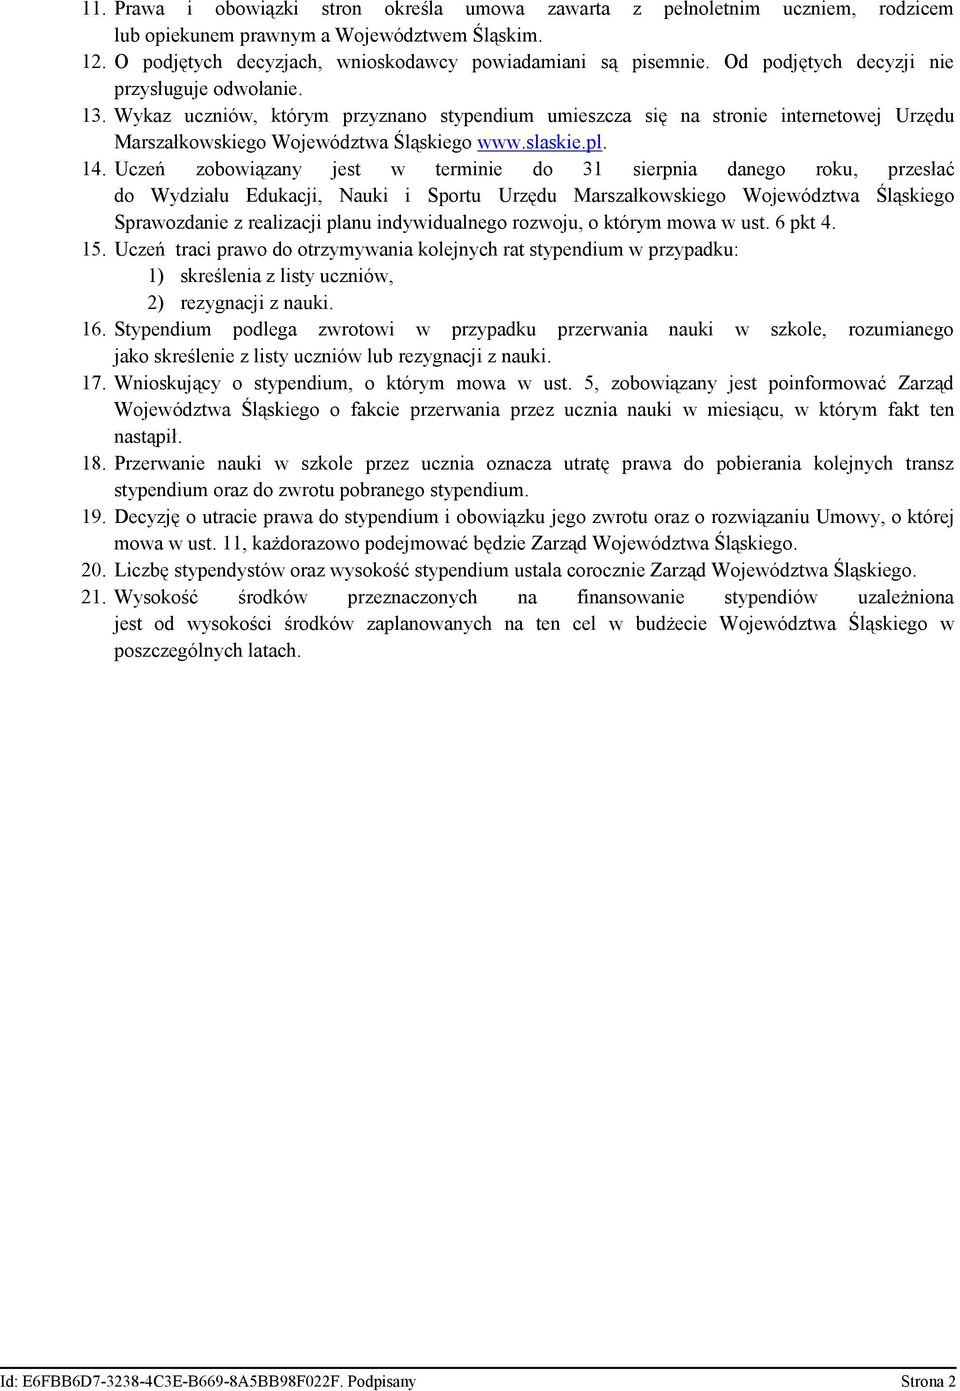 Uczeń zobowiązany jest w terminie do 31 sierpnia danego roku, przesłać do Wydziału Edukacji, Nauki i Sportu Urzędu Marszałkowskiego Województwa Śląskiego Sprawozdanie z realizacji planu